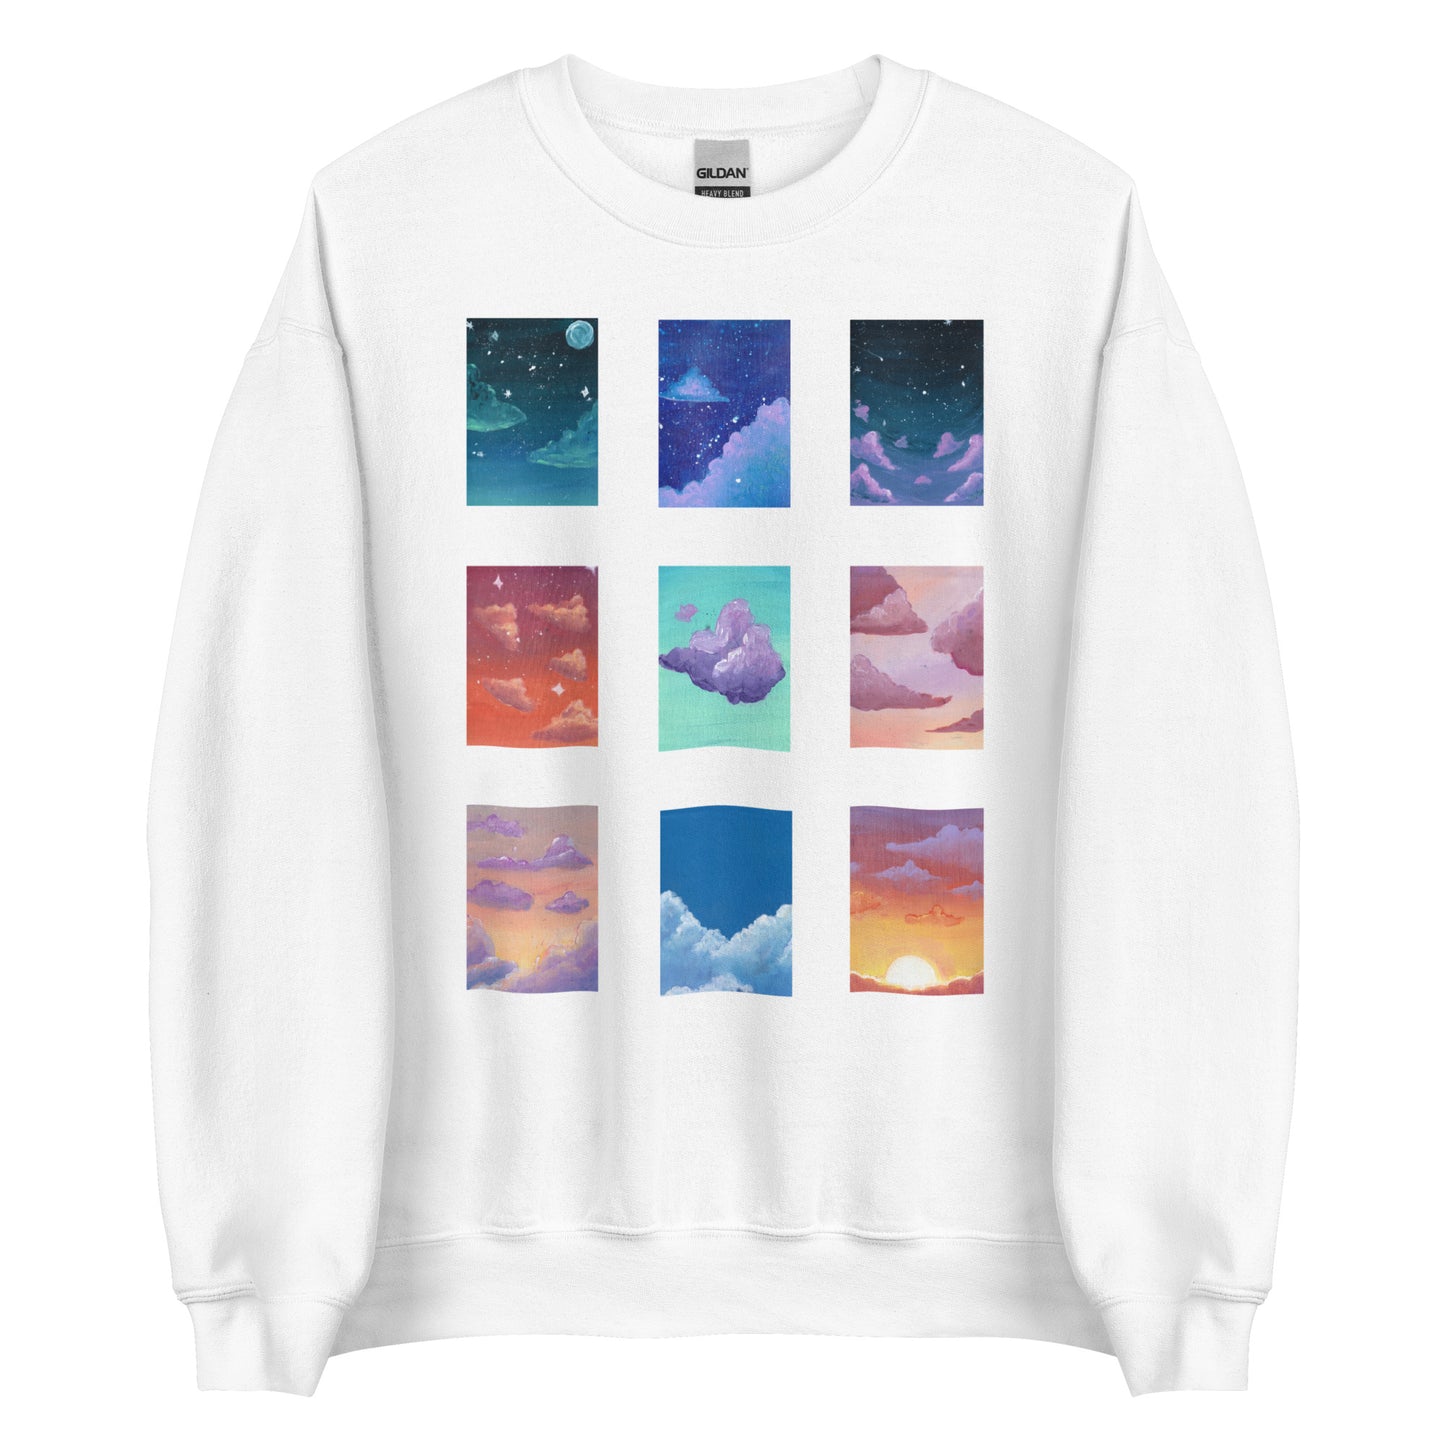 Dreamscapes sweatshirt